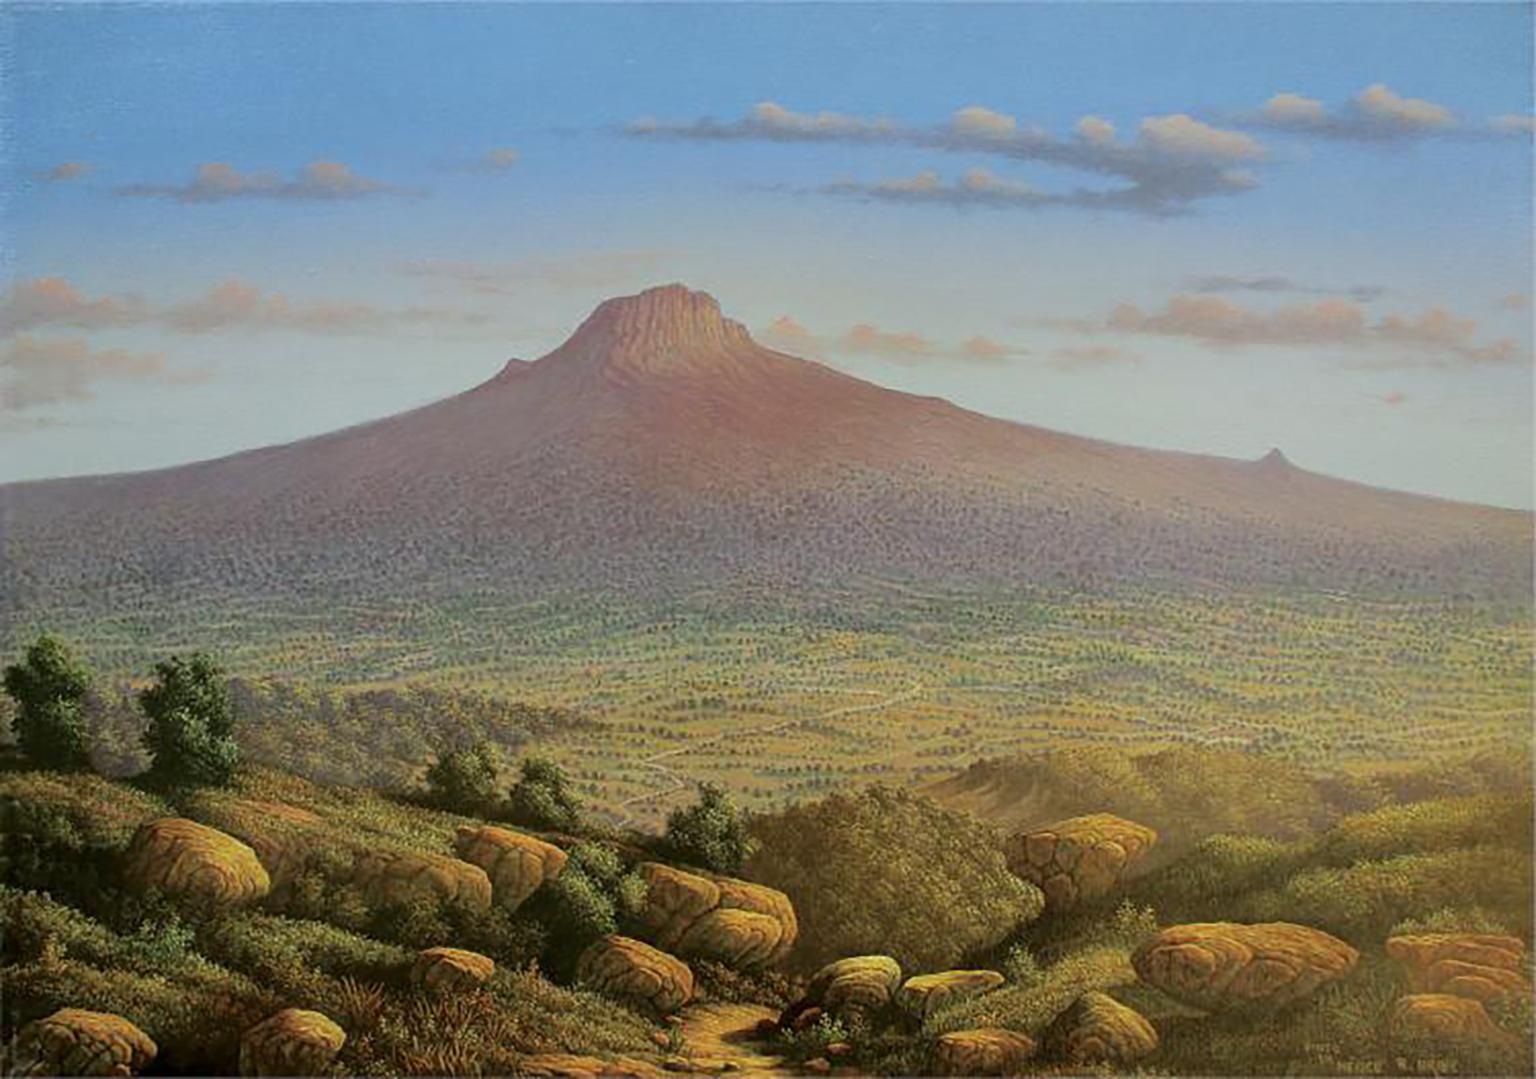 Unknown Landscape Painting - Original Oil on Canvas Landscape